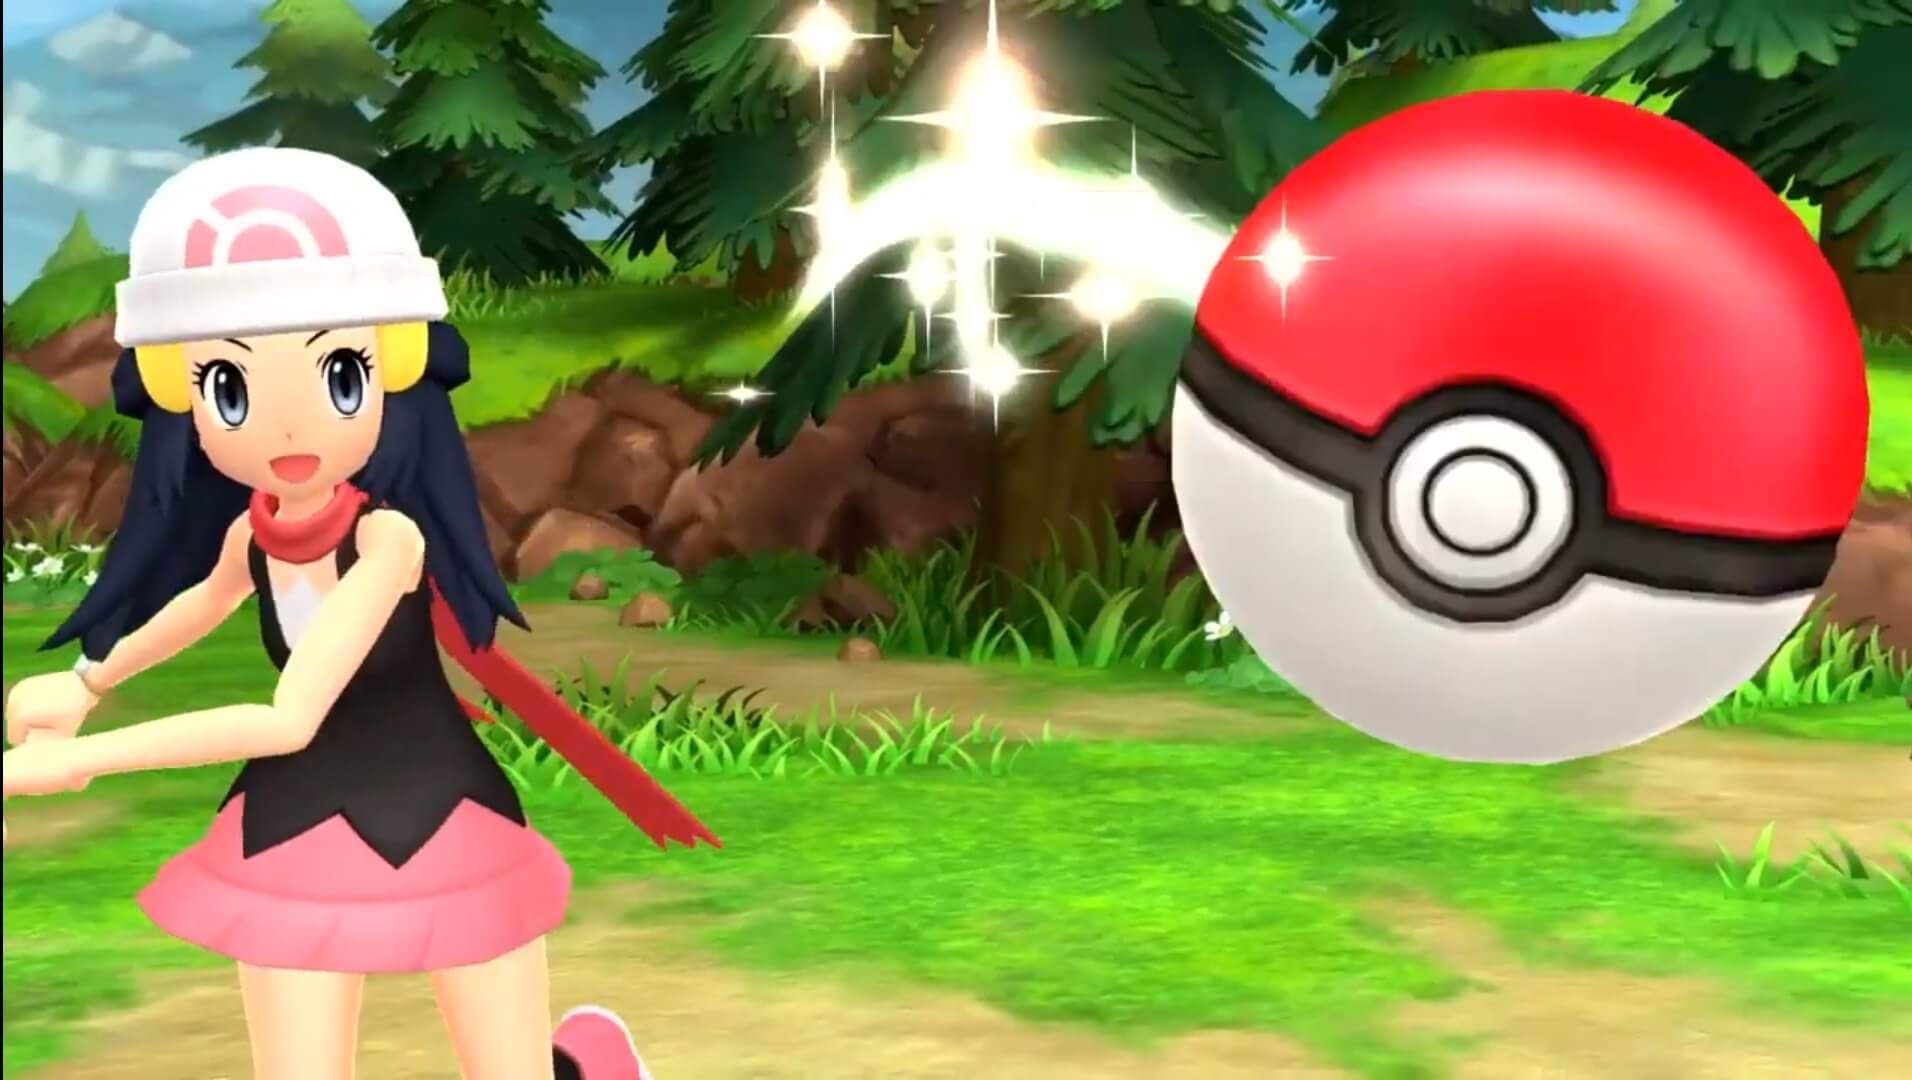 Avance] Últimas novedades sobre Leyendas Pokémon: Arceus y Pokémon Diamante  Brillante/ Perla Reluciente - AllGamersIn